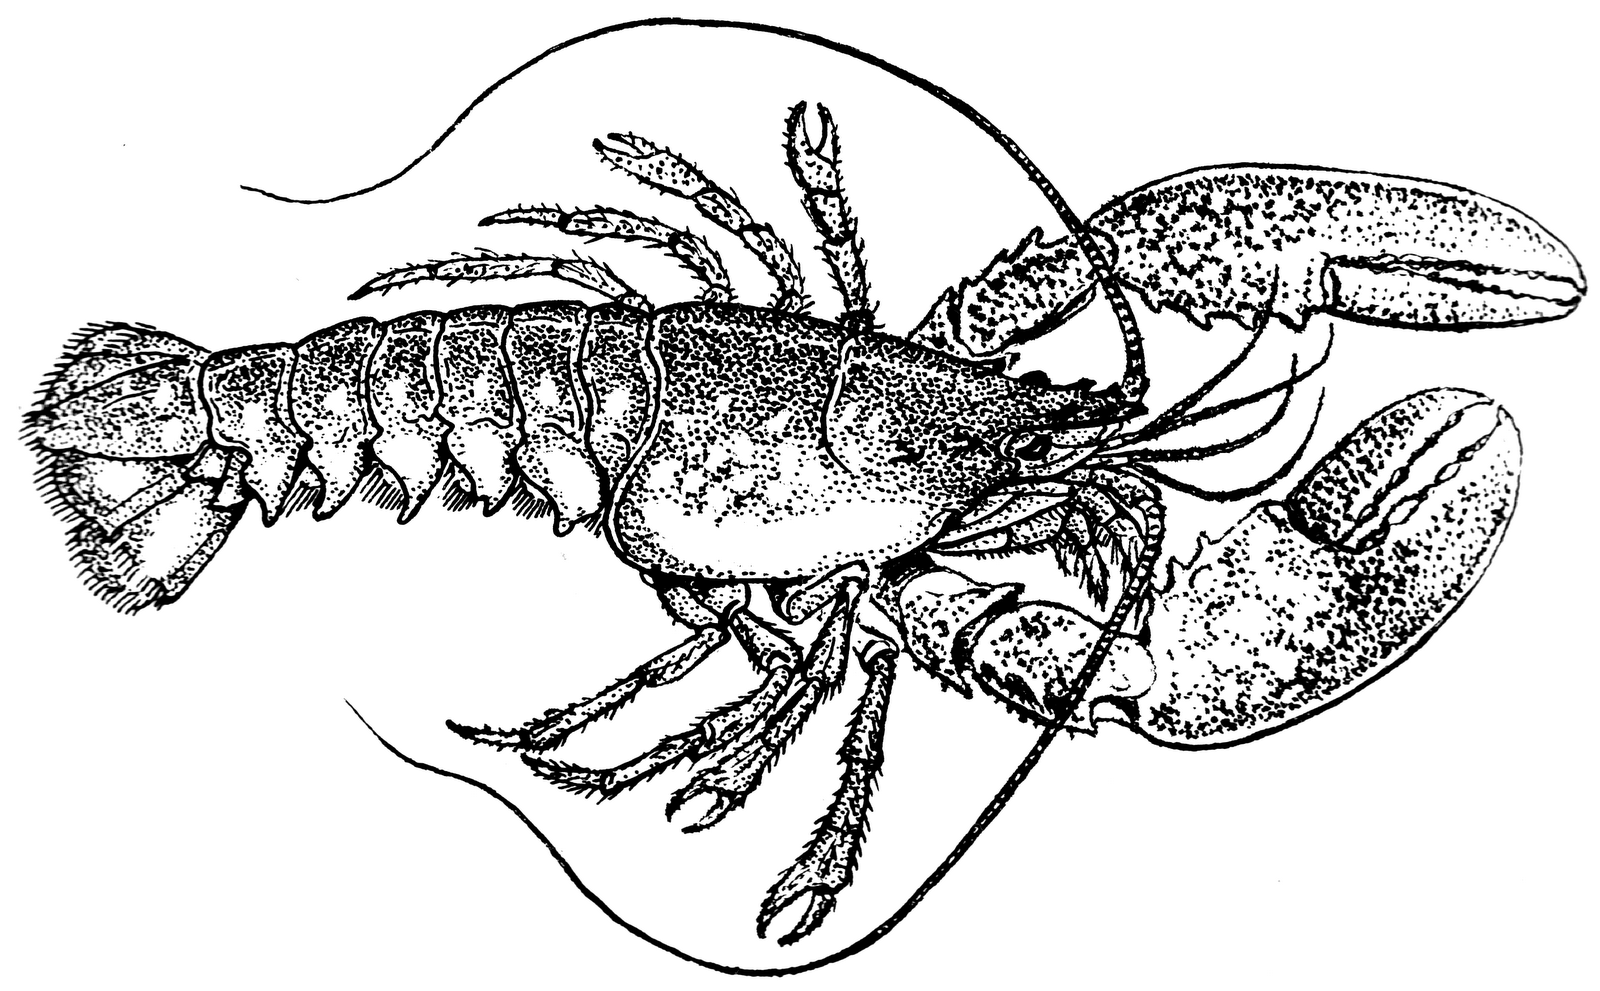 Lobster outline 2